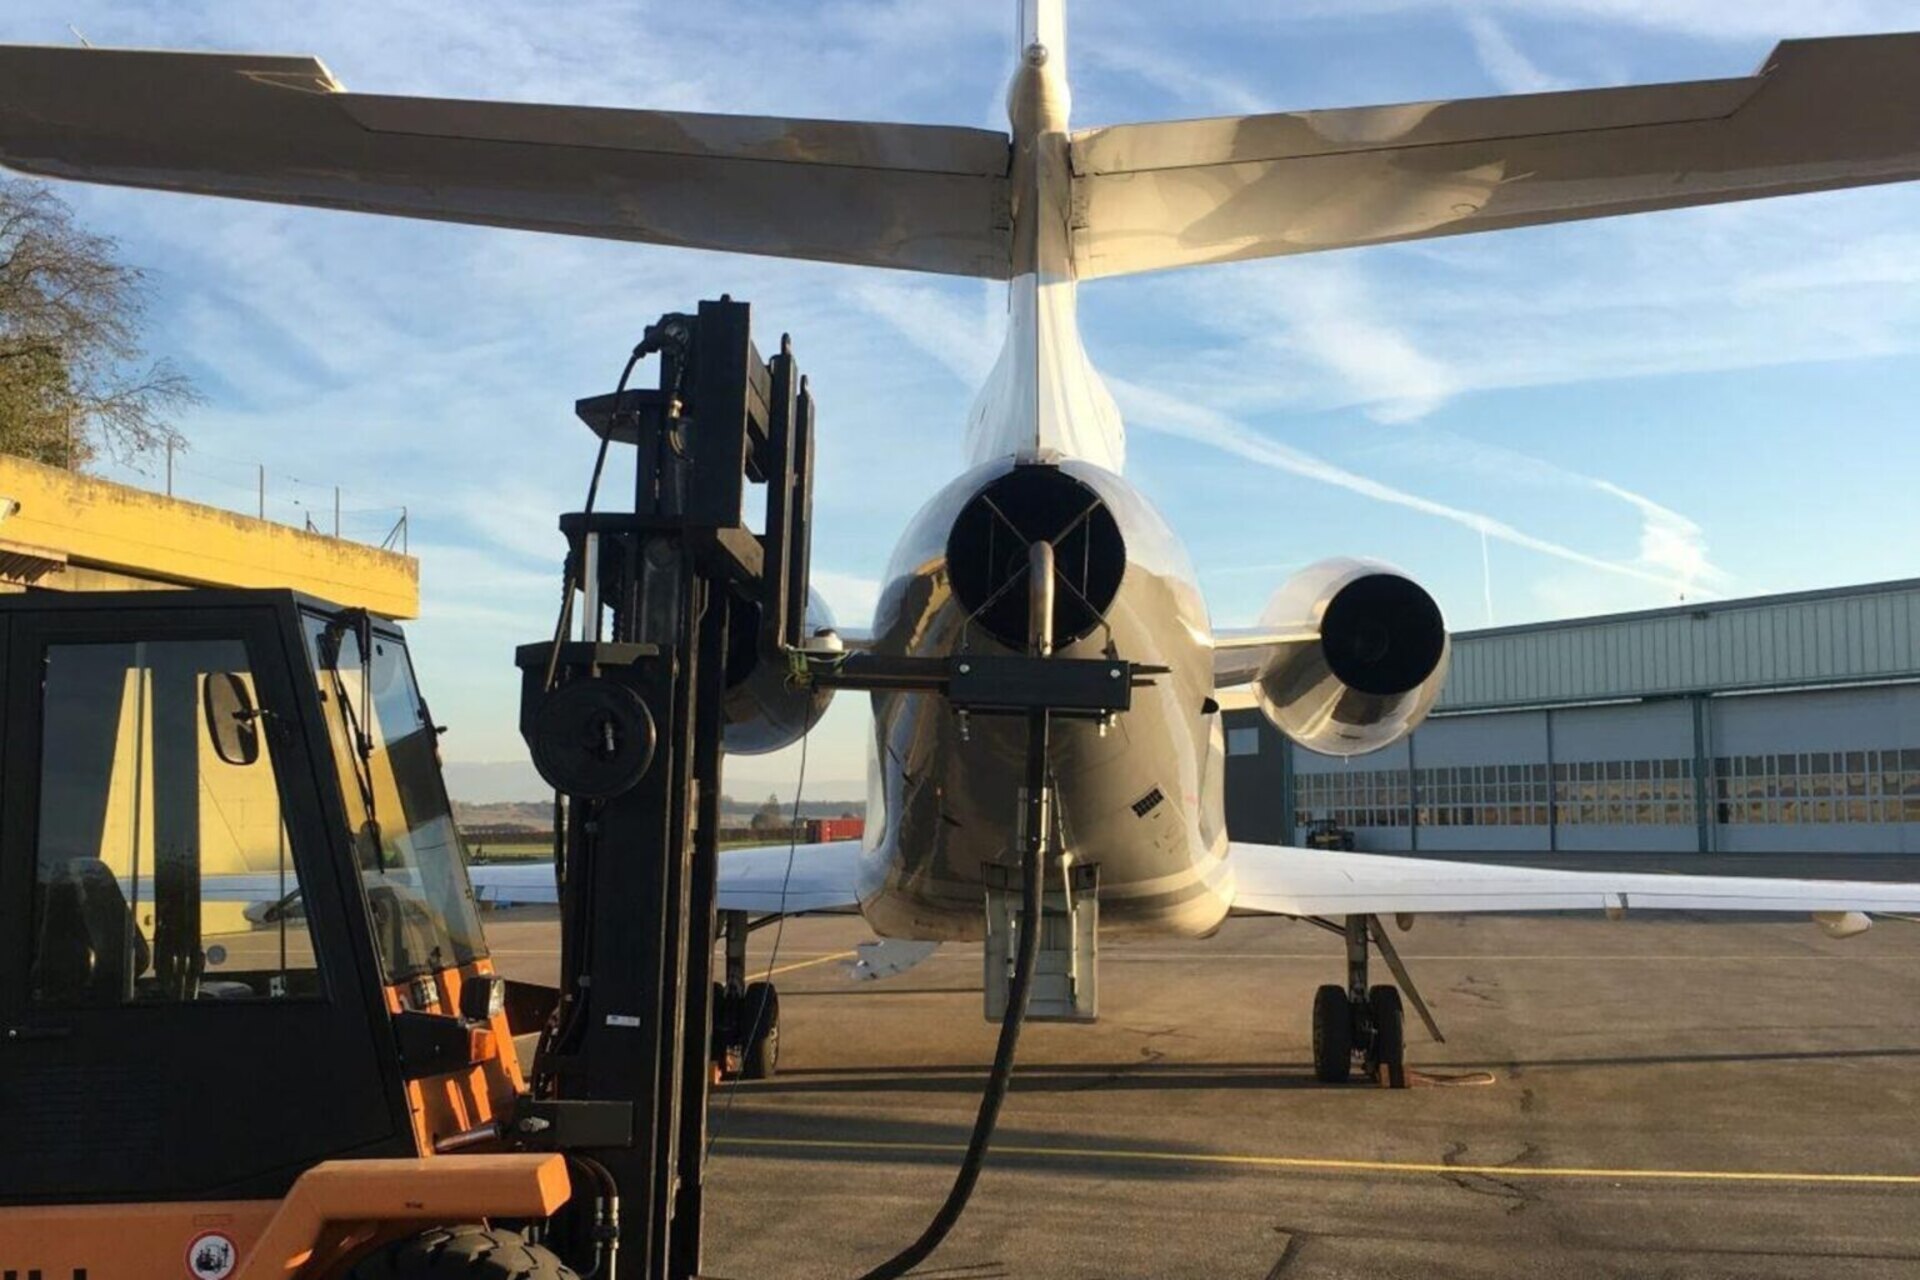 Vazduhoplovstvo: testovi novog održivog goriva od strane Schweizer Armee u Payerneu u kantonu Vaud